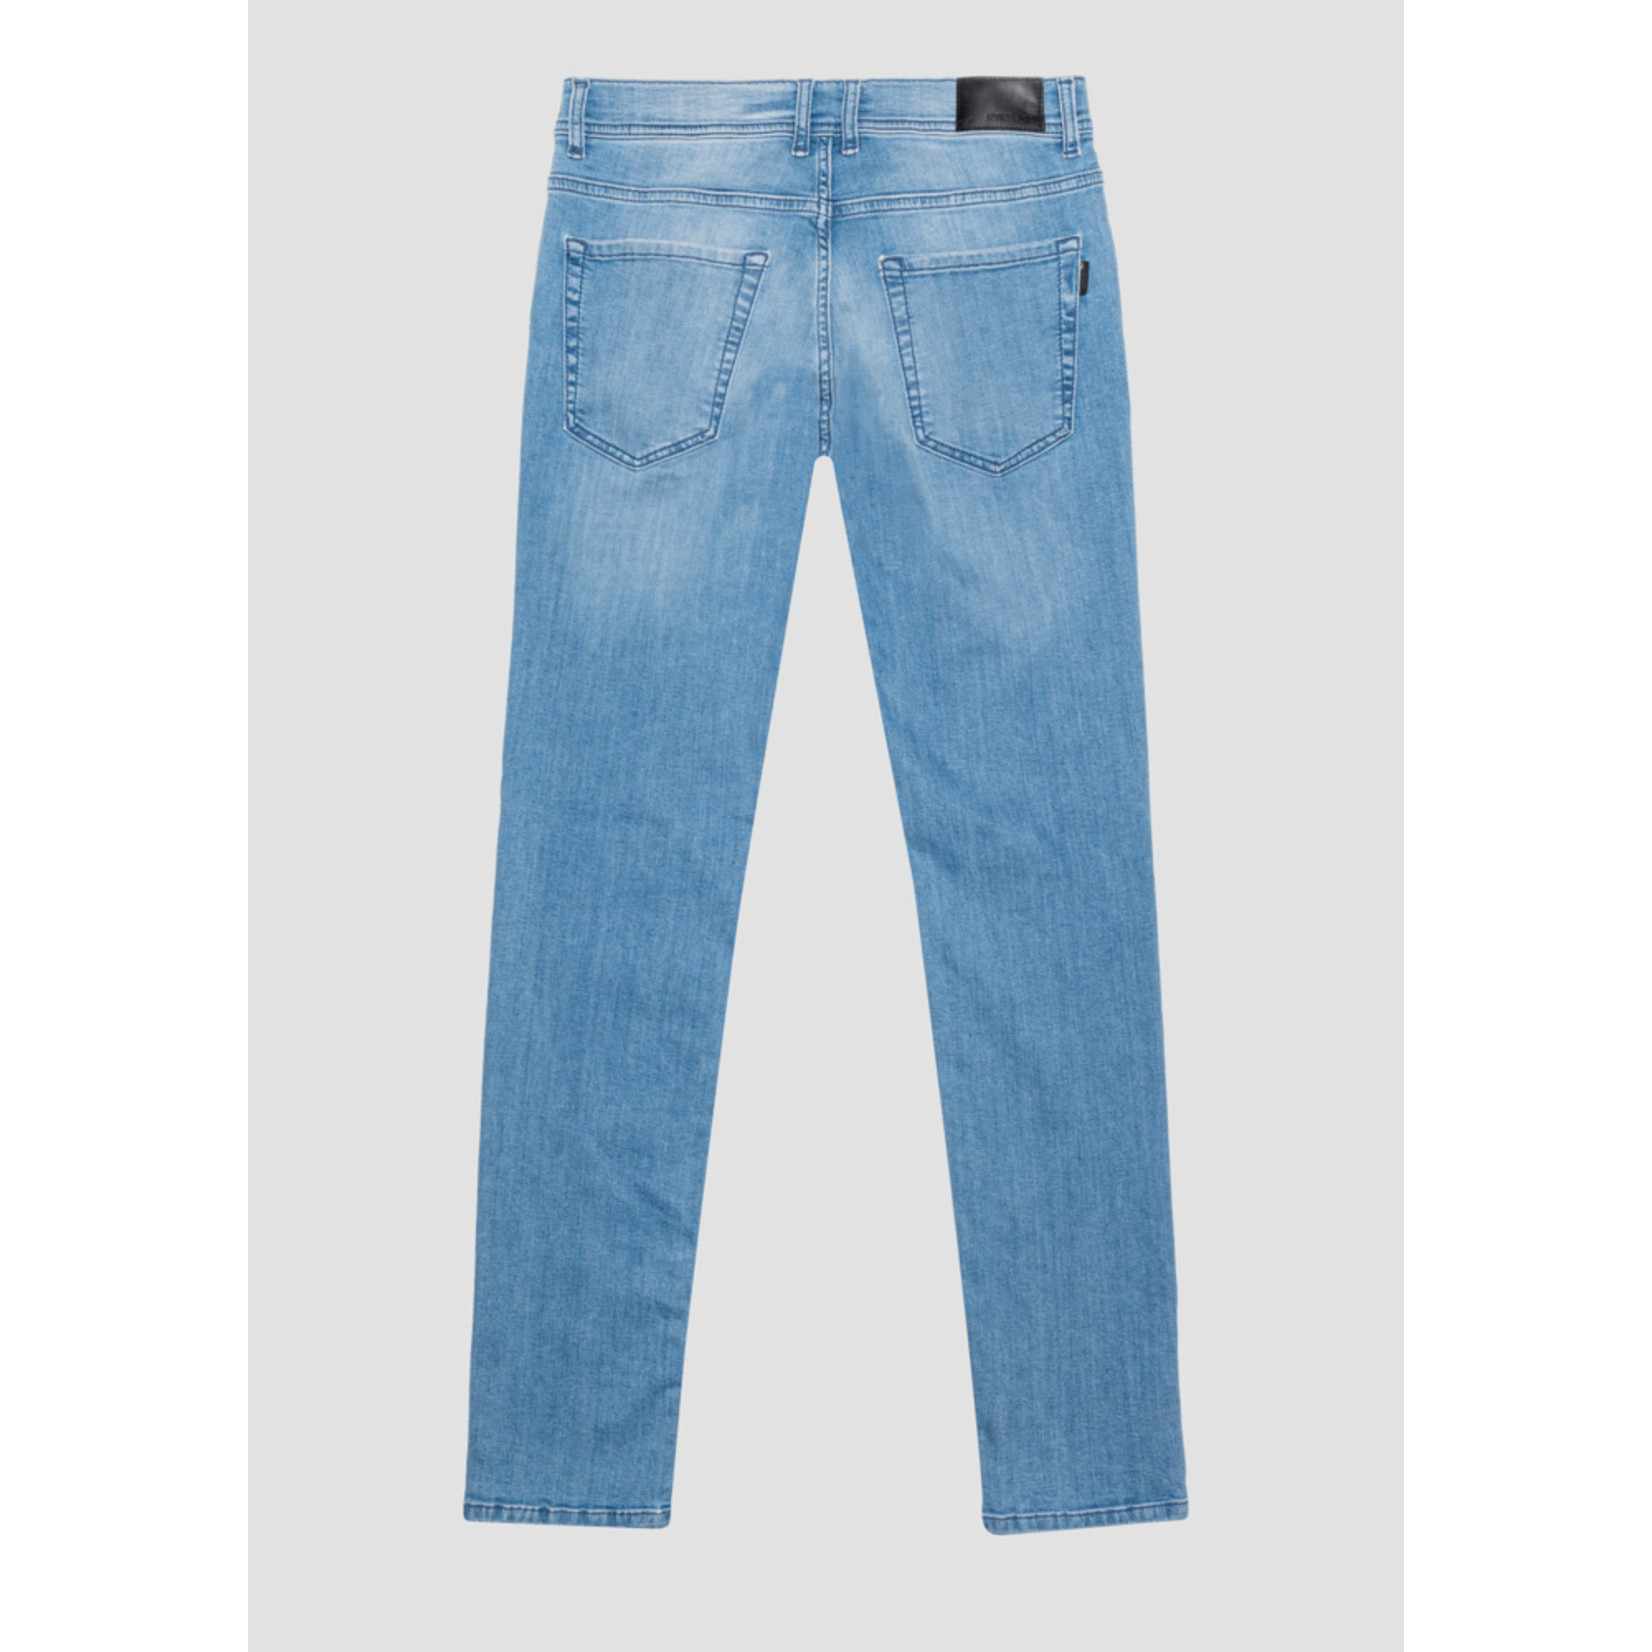 Antony Morato Jeans Skinny Fit MMDT00265-FA750383 7010 Blue Denim